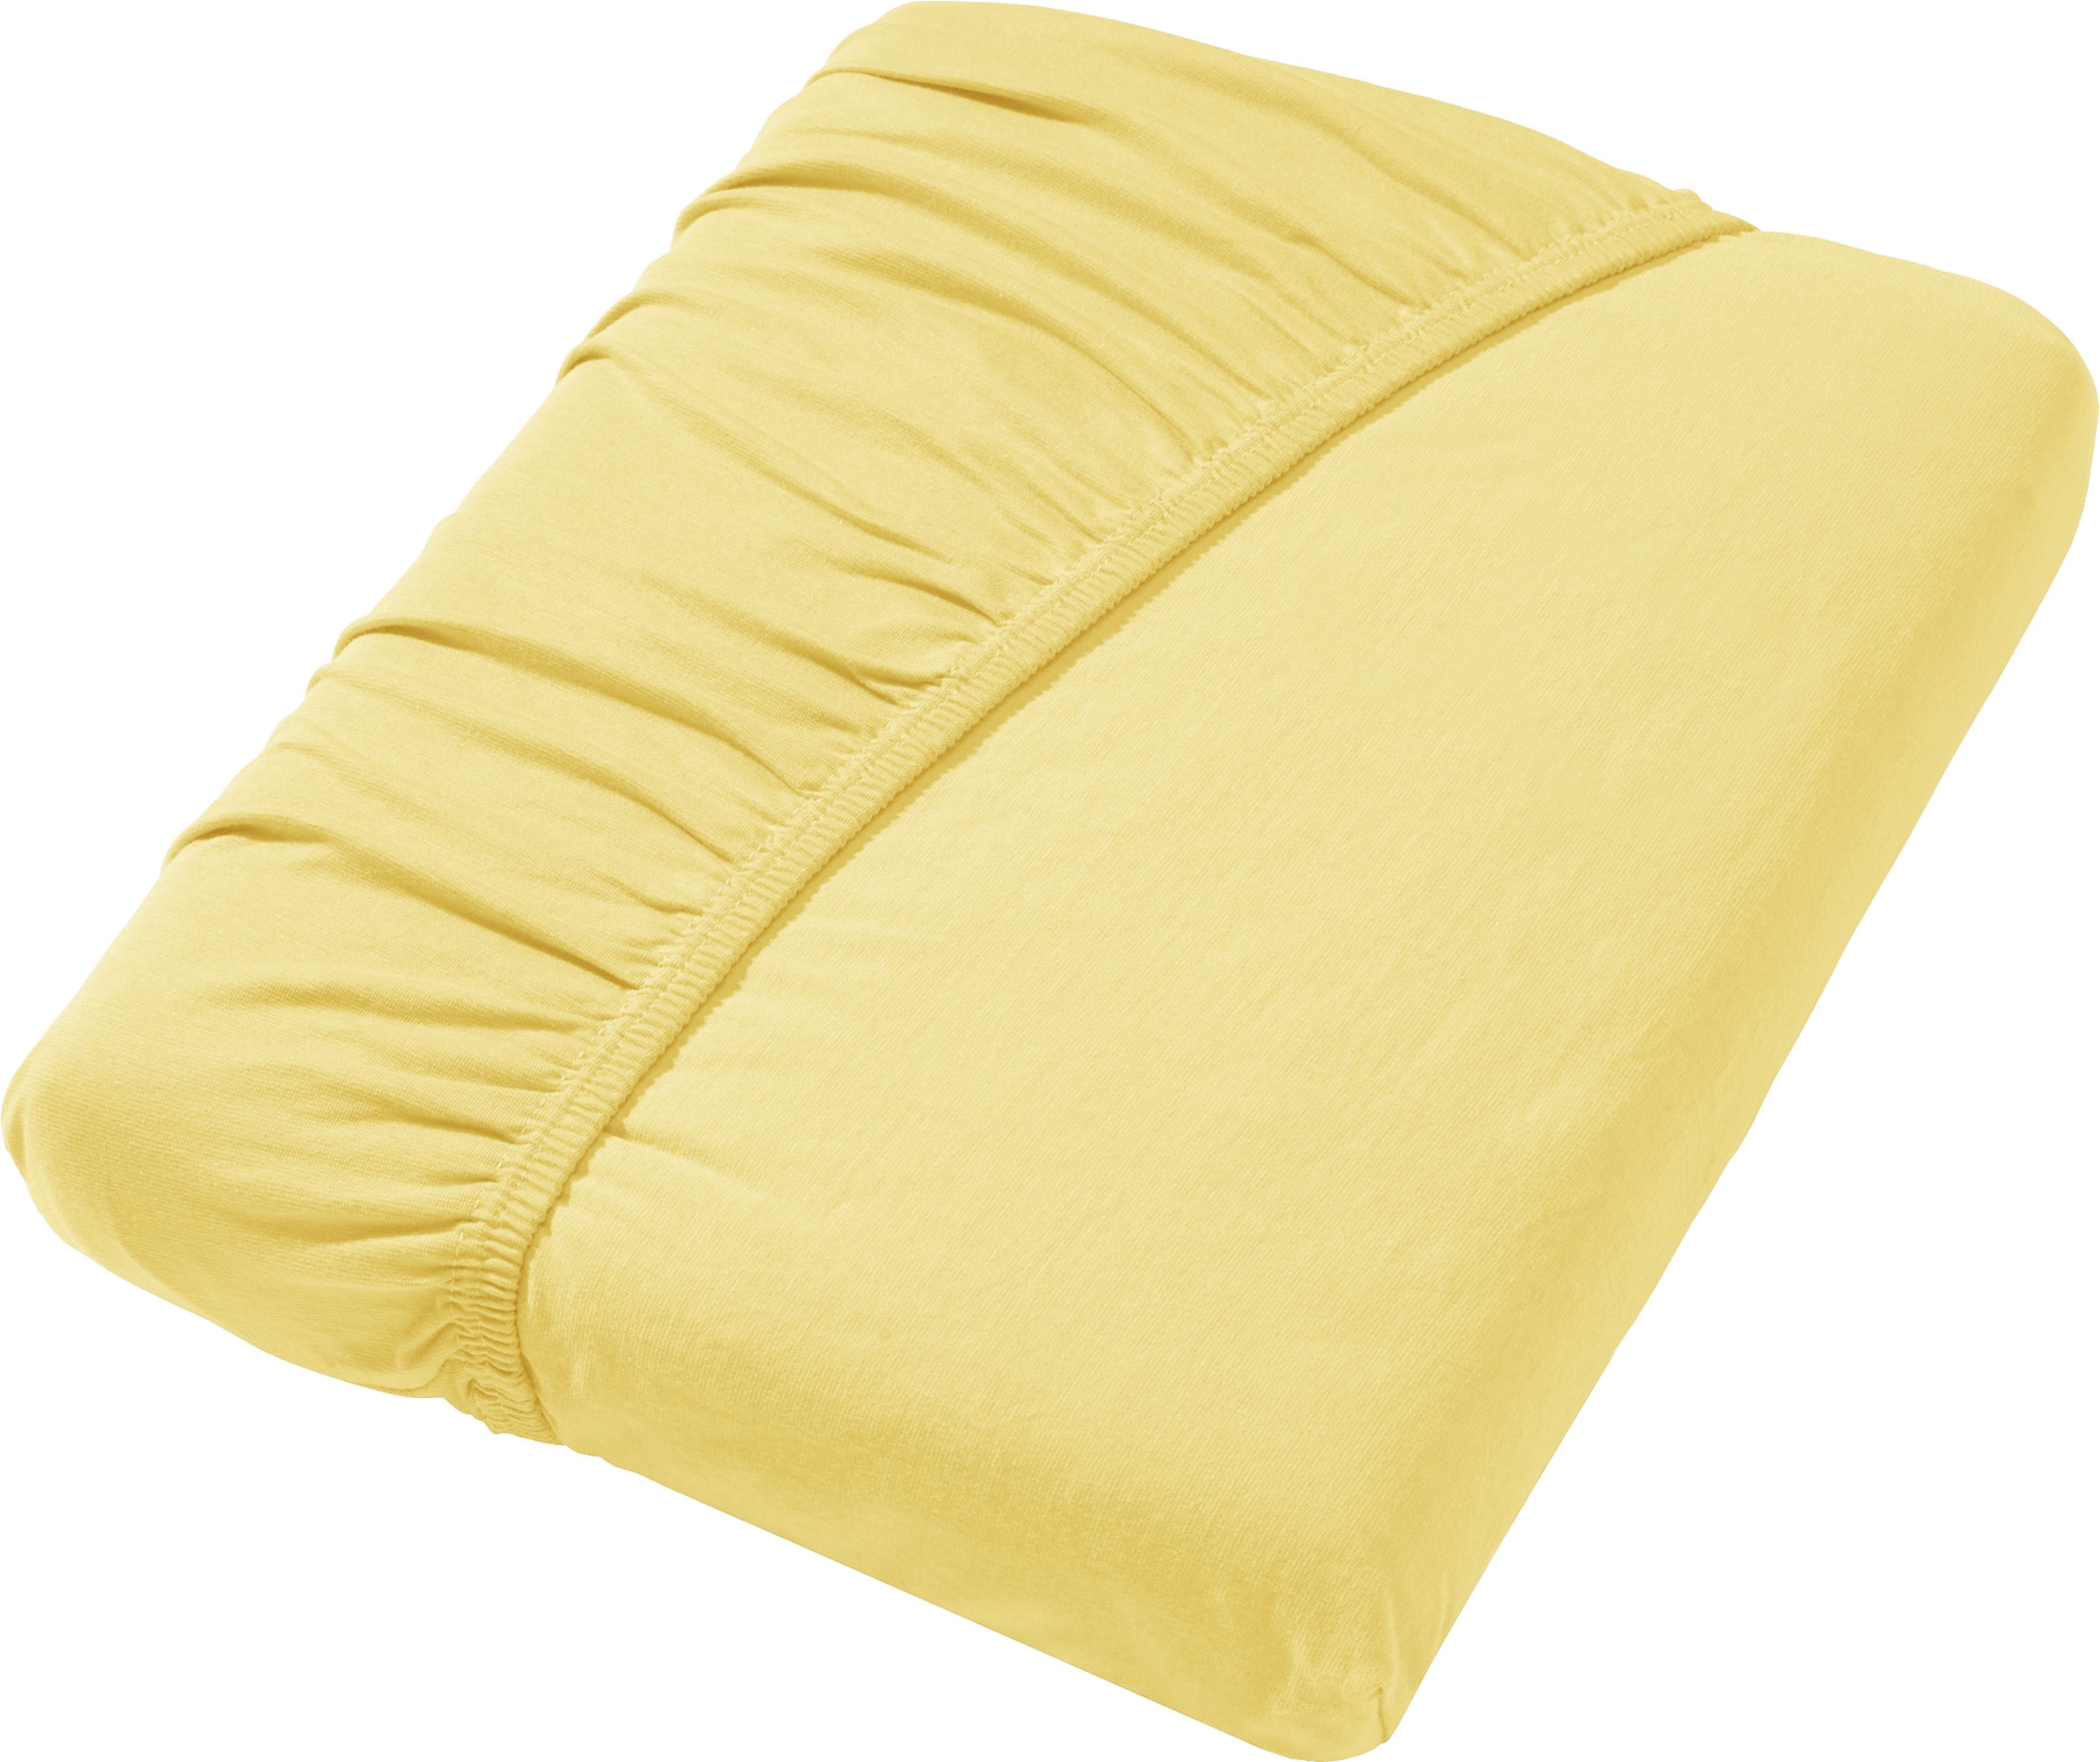 Tisch Bett günstig Kaufen-Spannbetttuch in zitrone von wäschepur. Spannbetttuch in zitrone von wäschepur <![CDATA[Spannbetttuch aus Elastik-Jersey: elastisch, pflegeleicht und absolut bügelfrei. Rundum-Gummizug. Geeignet für eine Matratzenhöhe von bis zu 25 cm.]]>. 